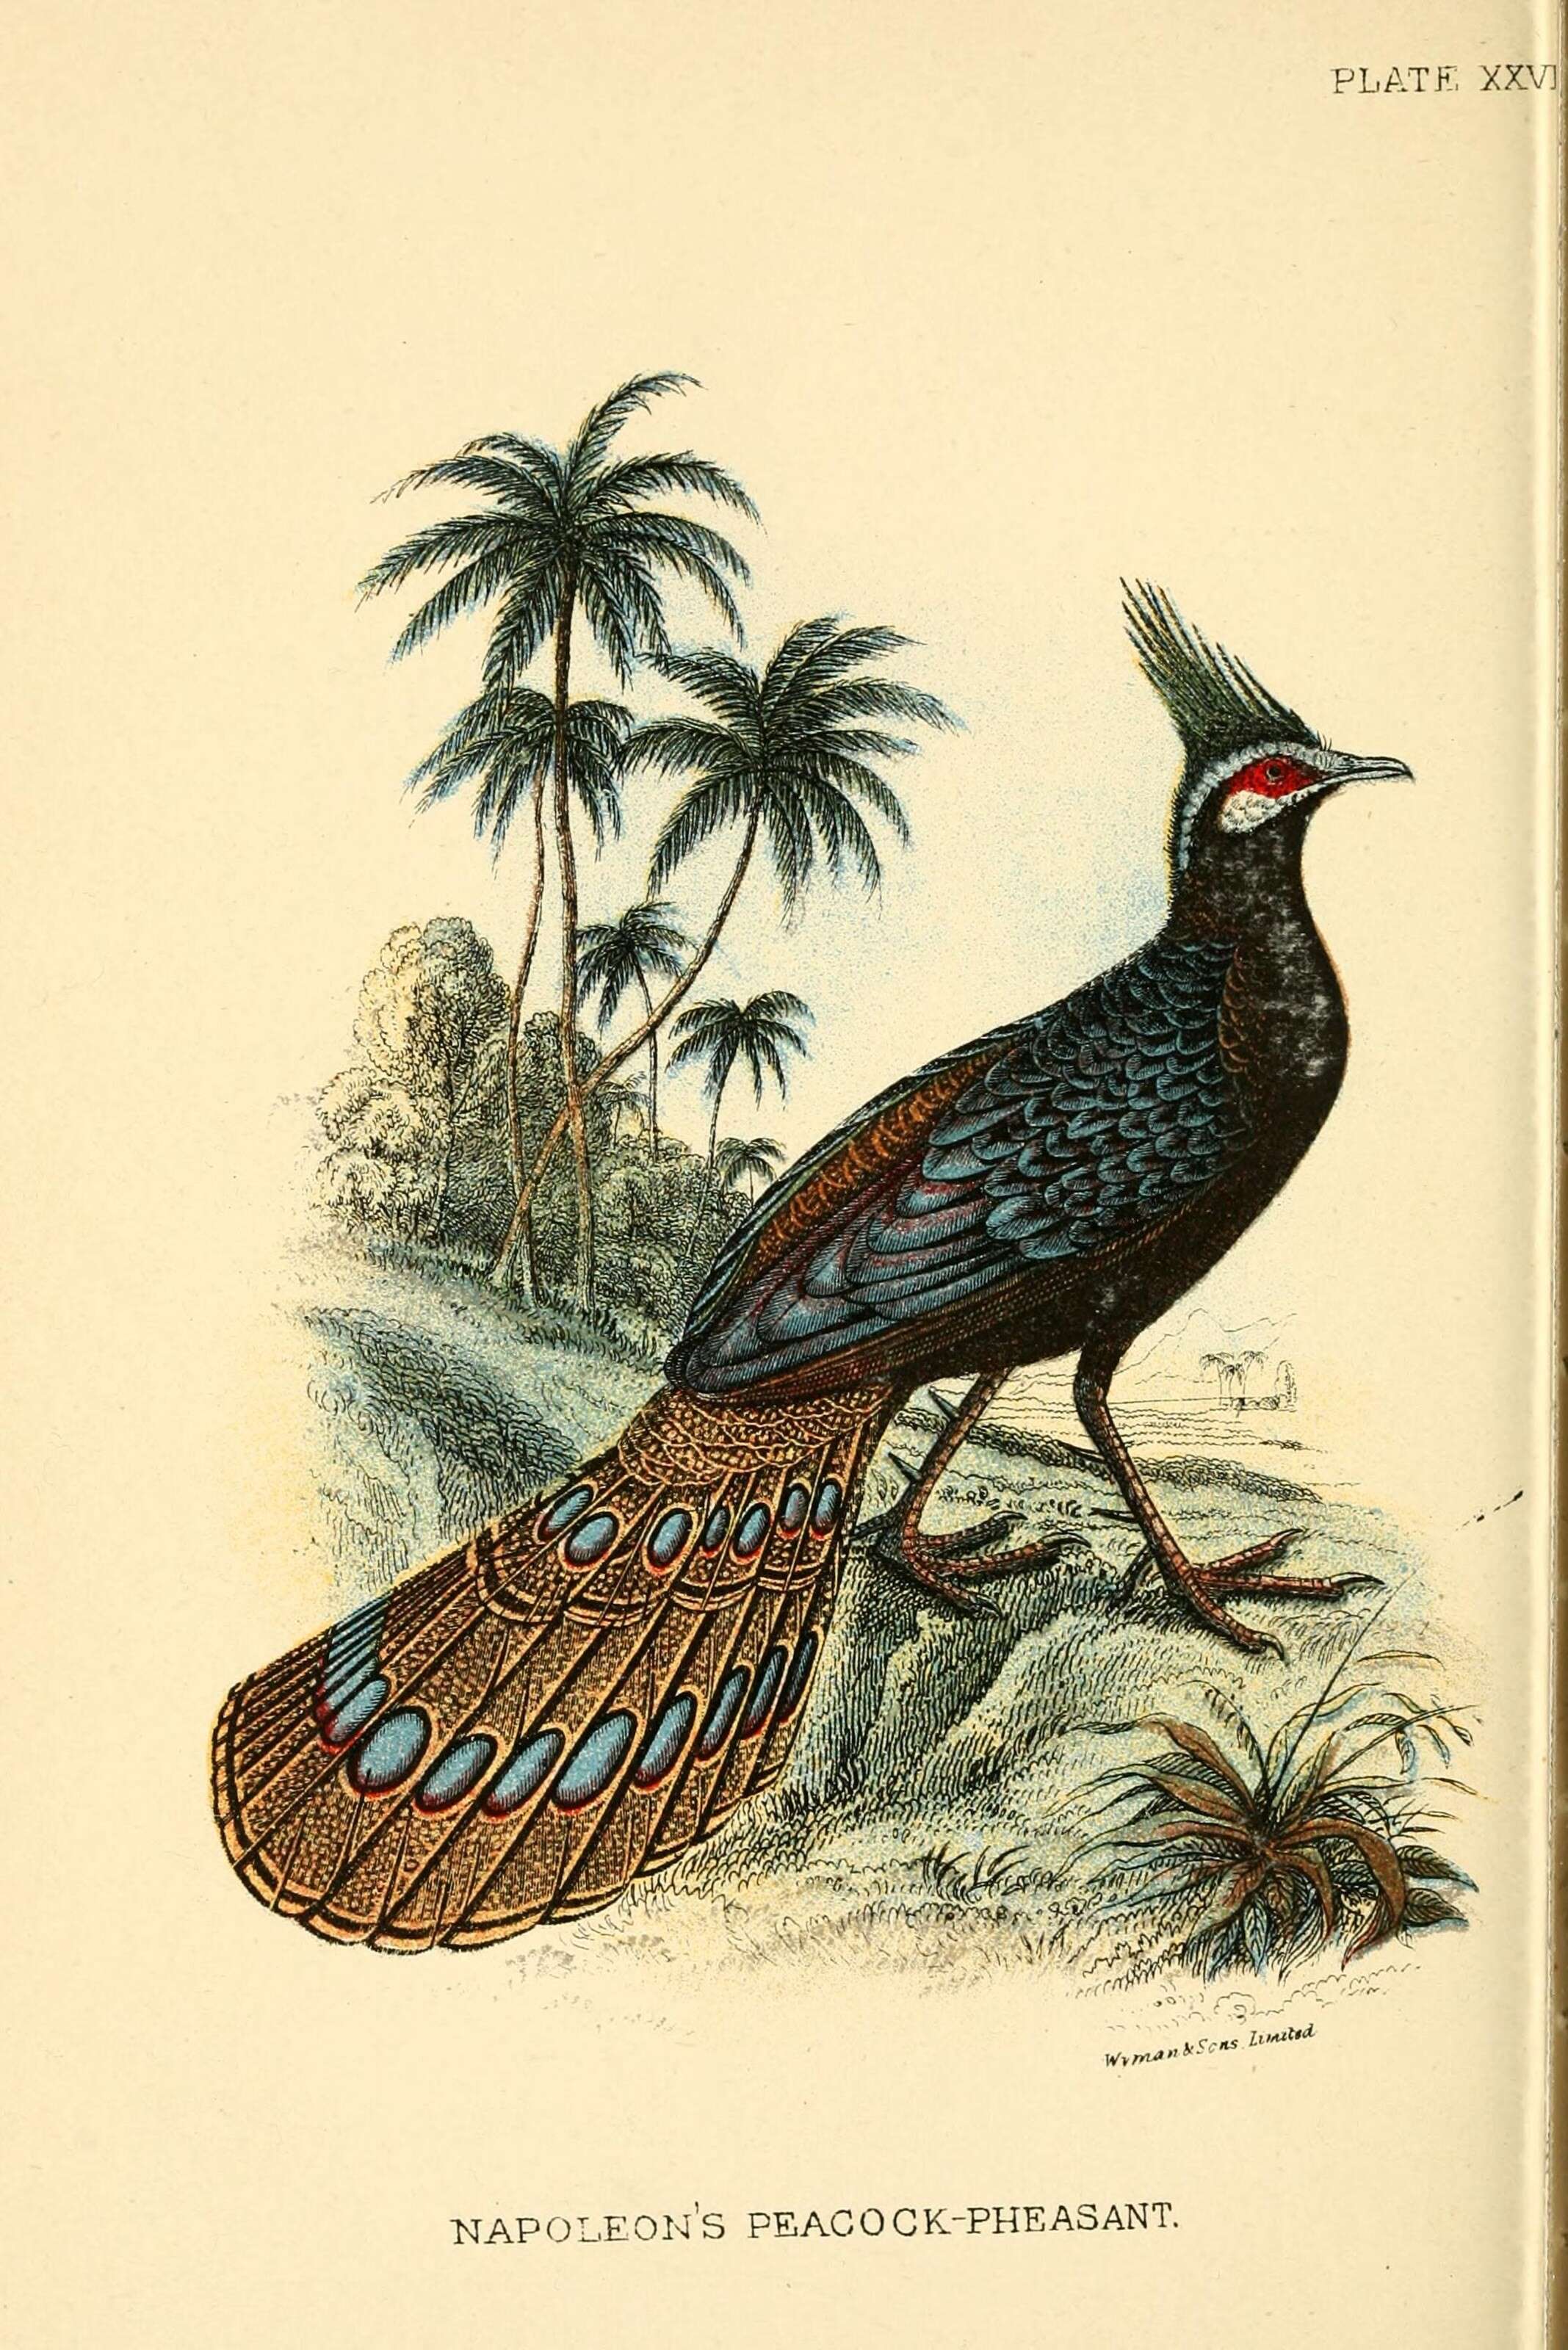 Image of Napoleon's Peacock-pheasant